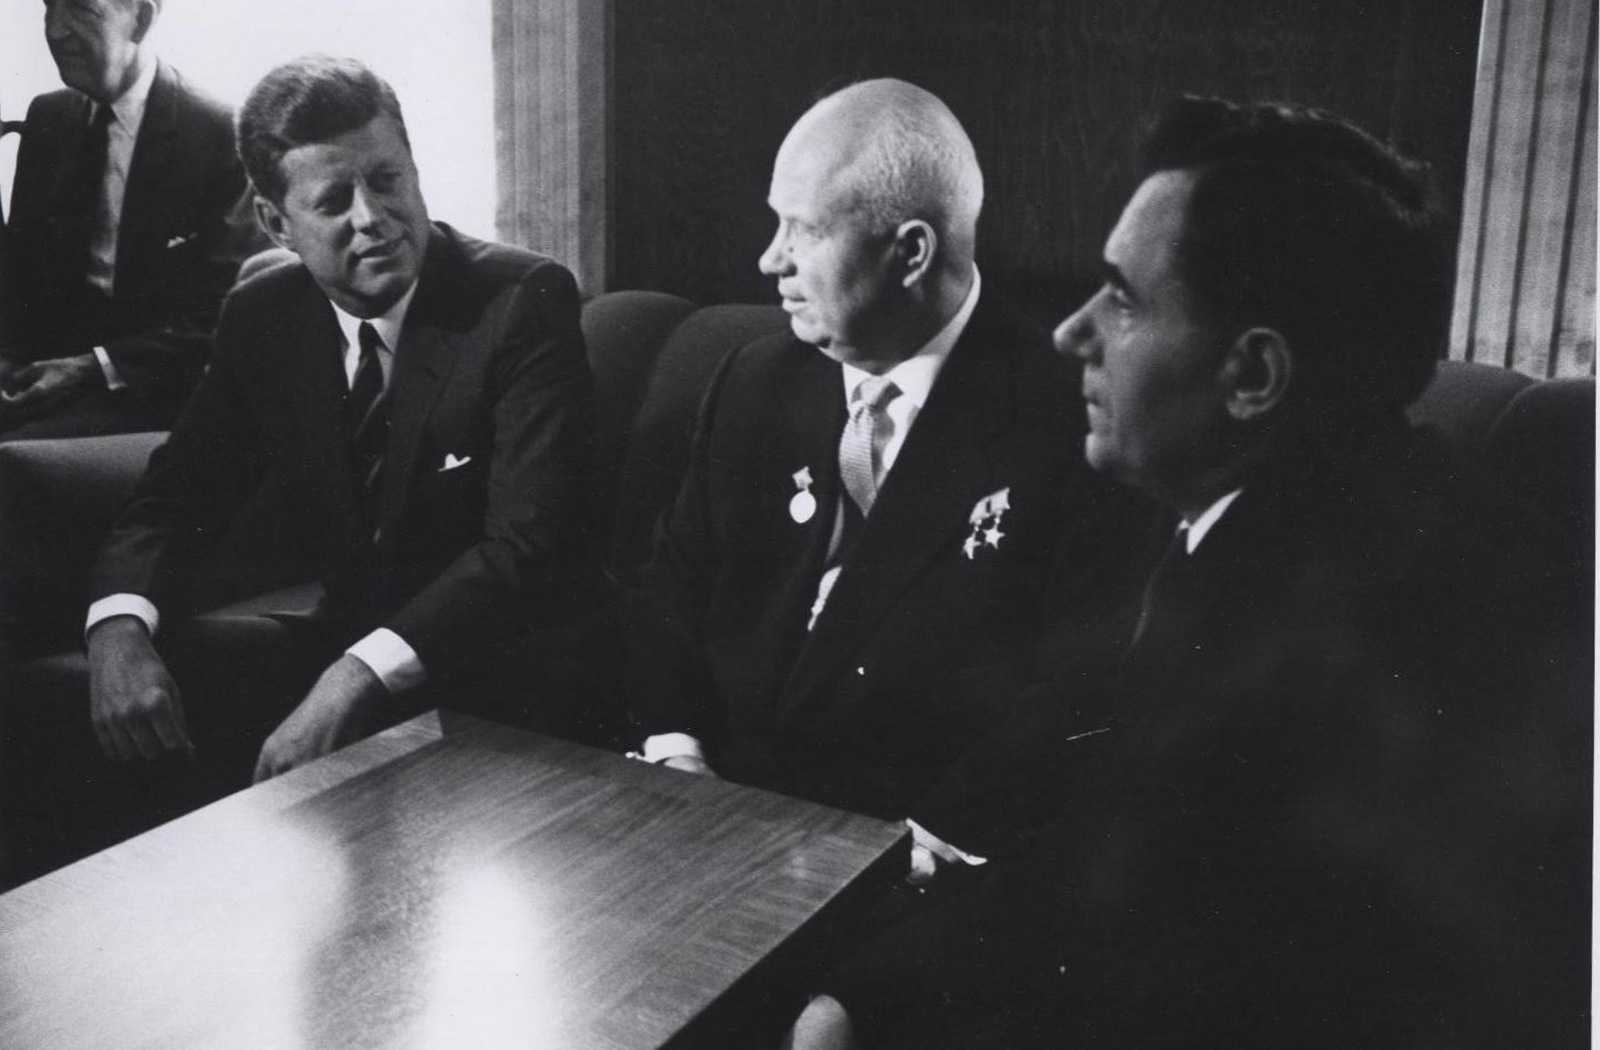 President Kennedy and Soviet Premier Nikita Khrushchev